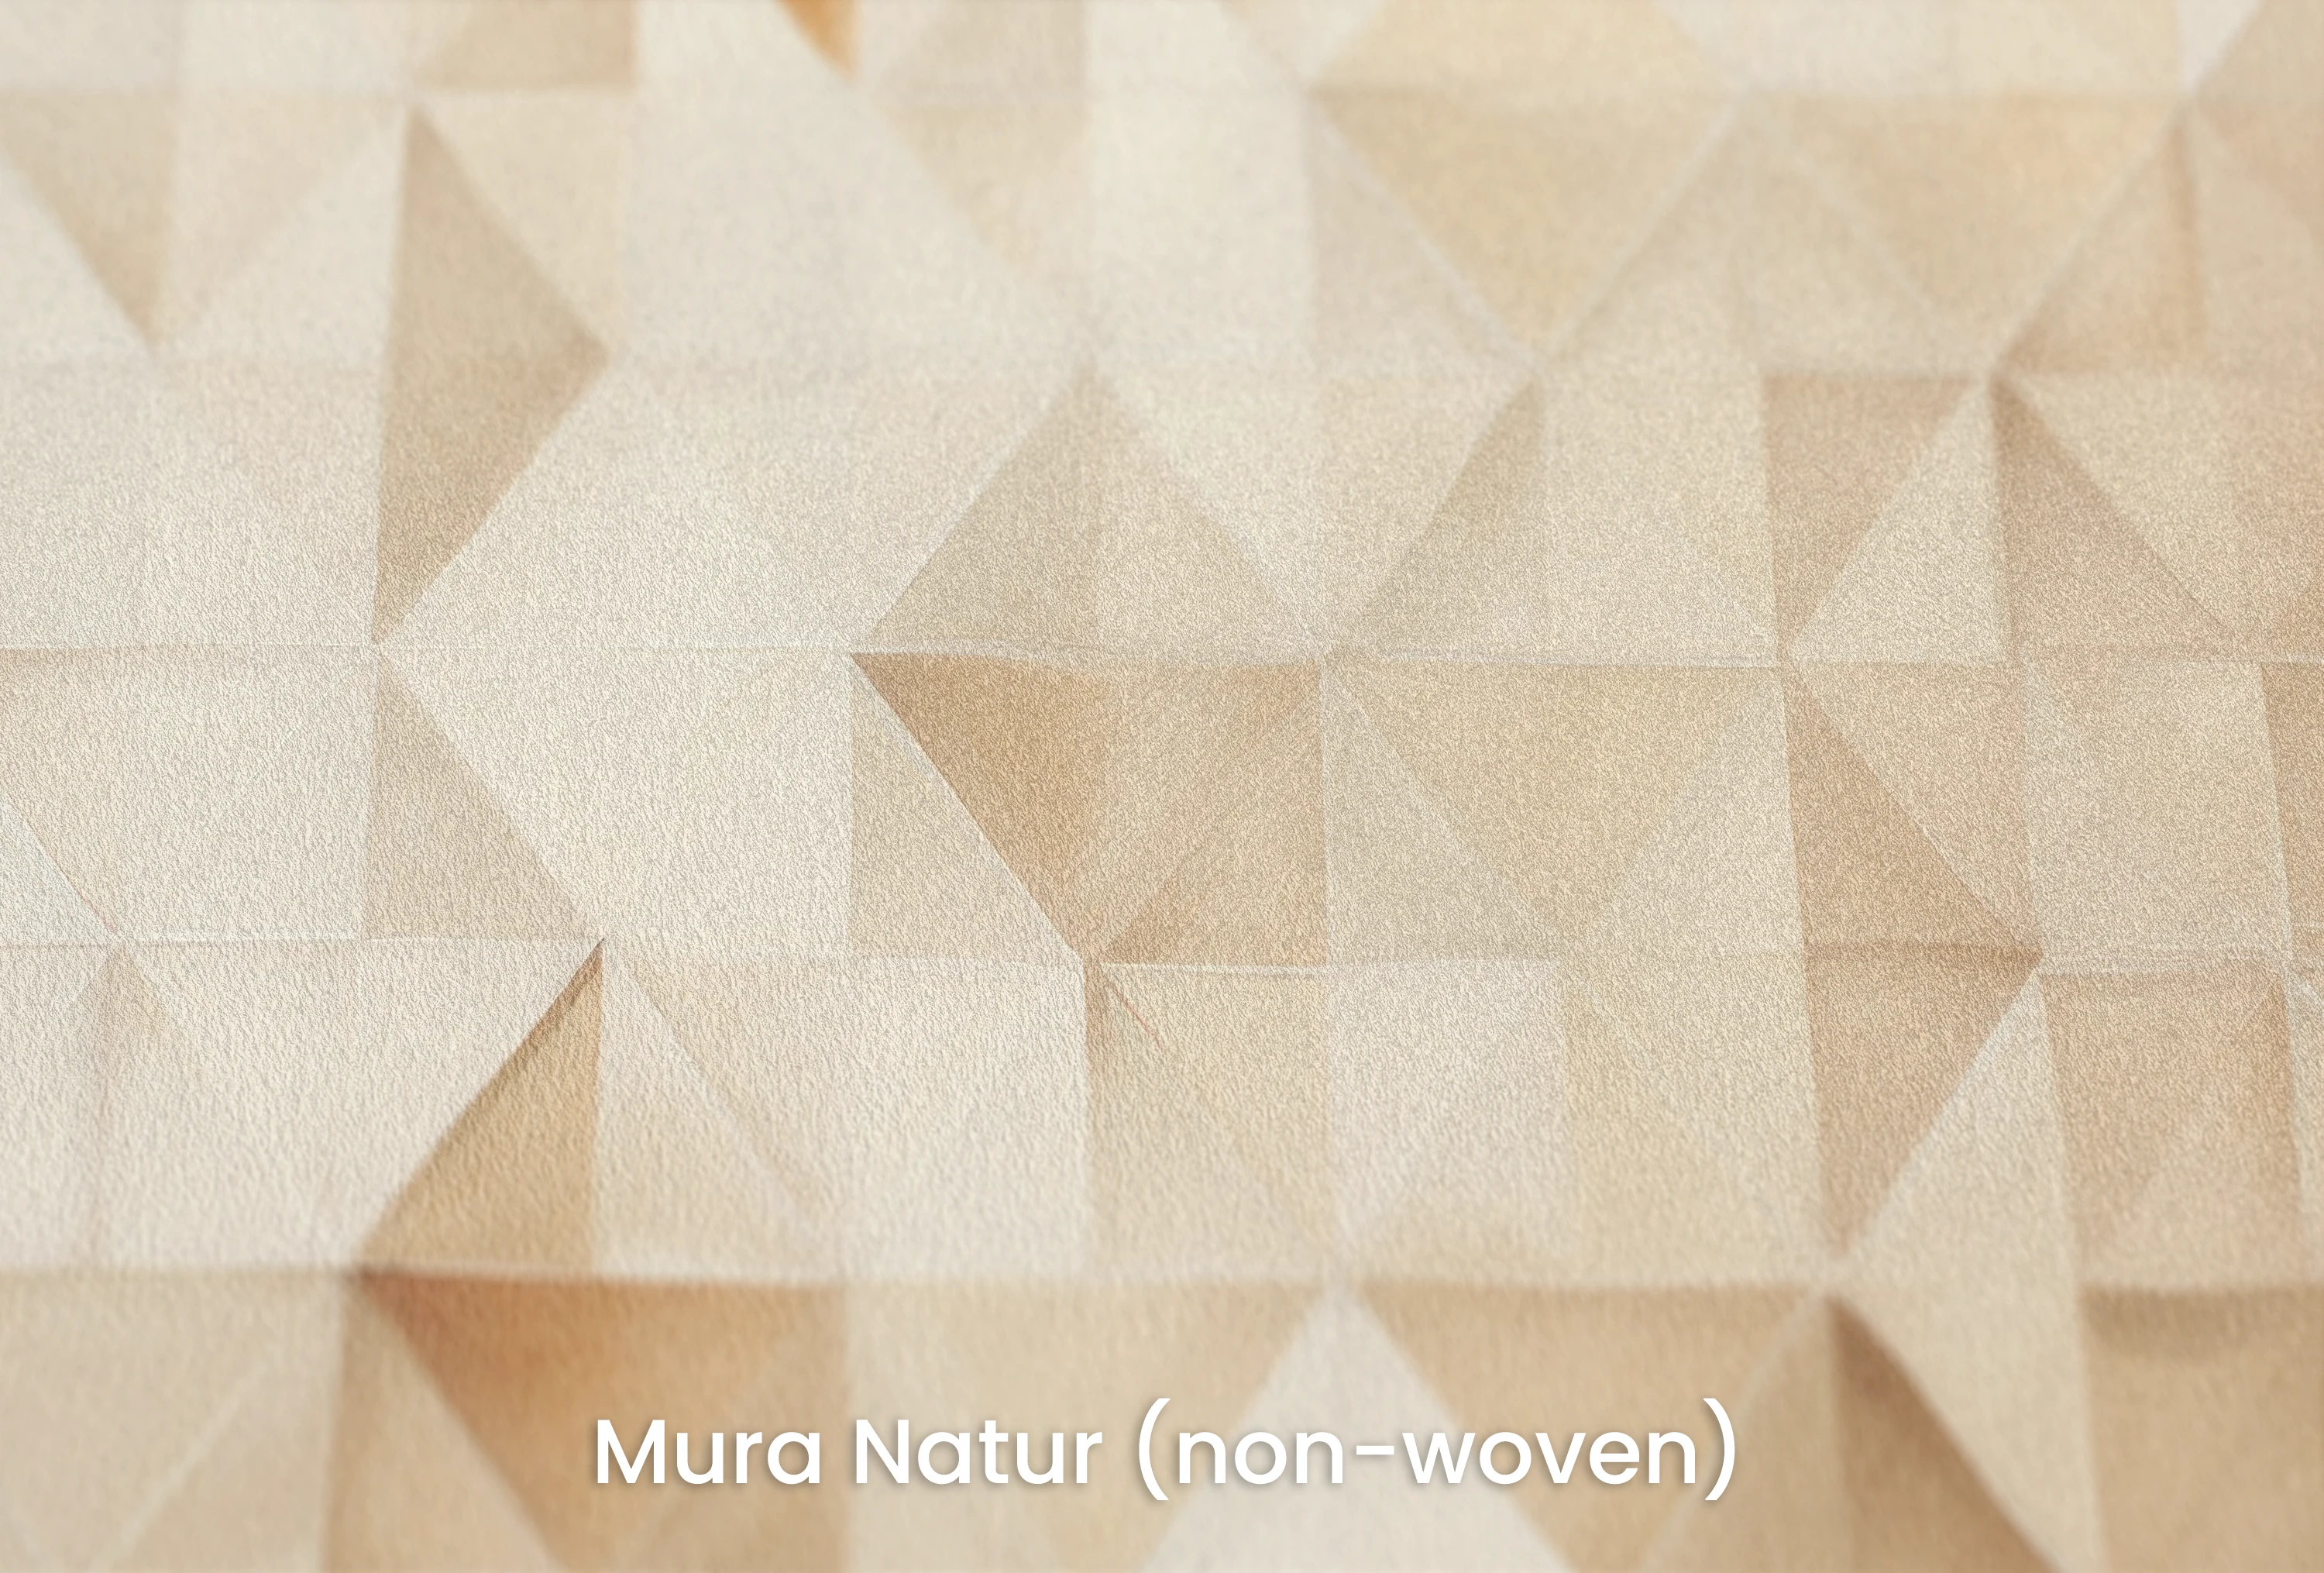 Mura Natur (non-woven) - Tapeta naturalna i ekologiczna tapeta z włókniny z delikatną fakturą - idealnie matowa - perfekcyjnie rozpraszająca nawet skupione światło